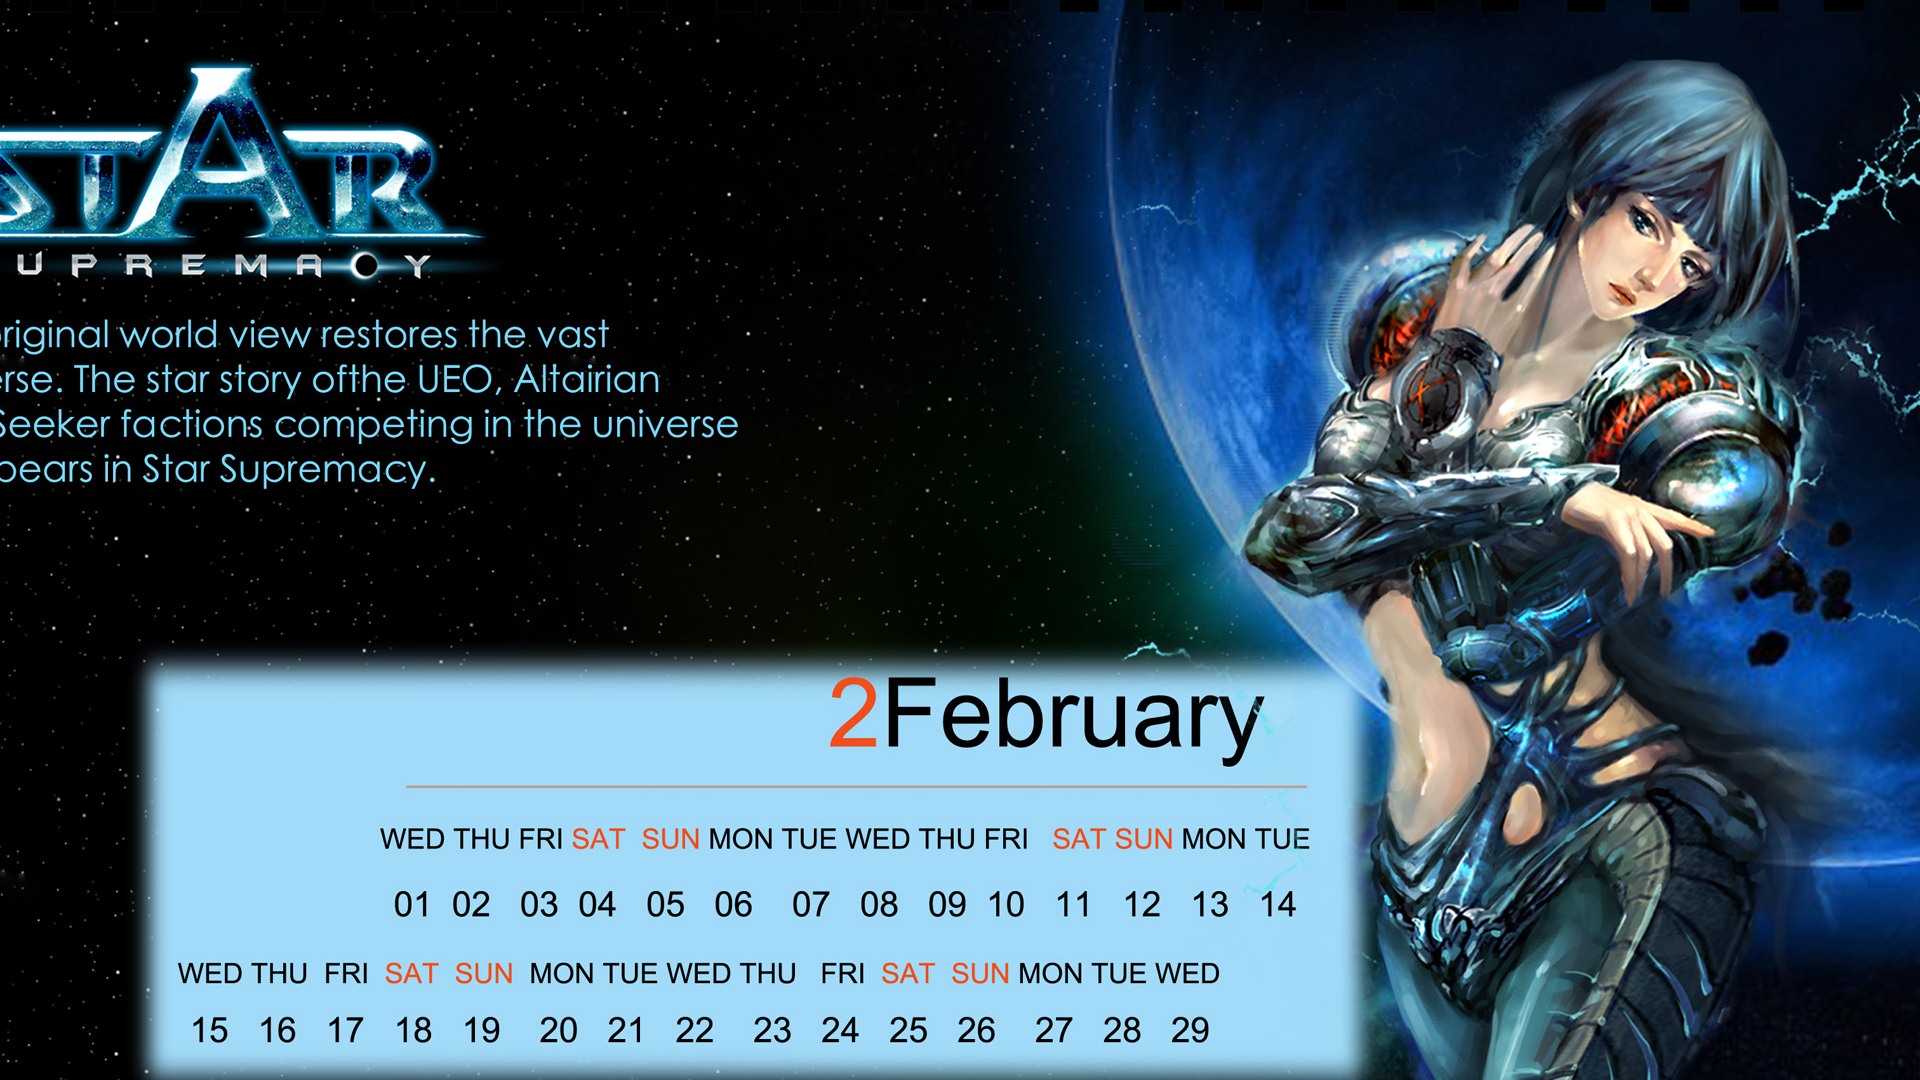 Calendario febrero 2012 fondos de pantalla (2) #16 - 1920x1080